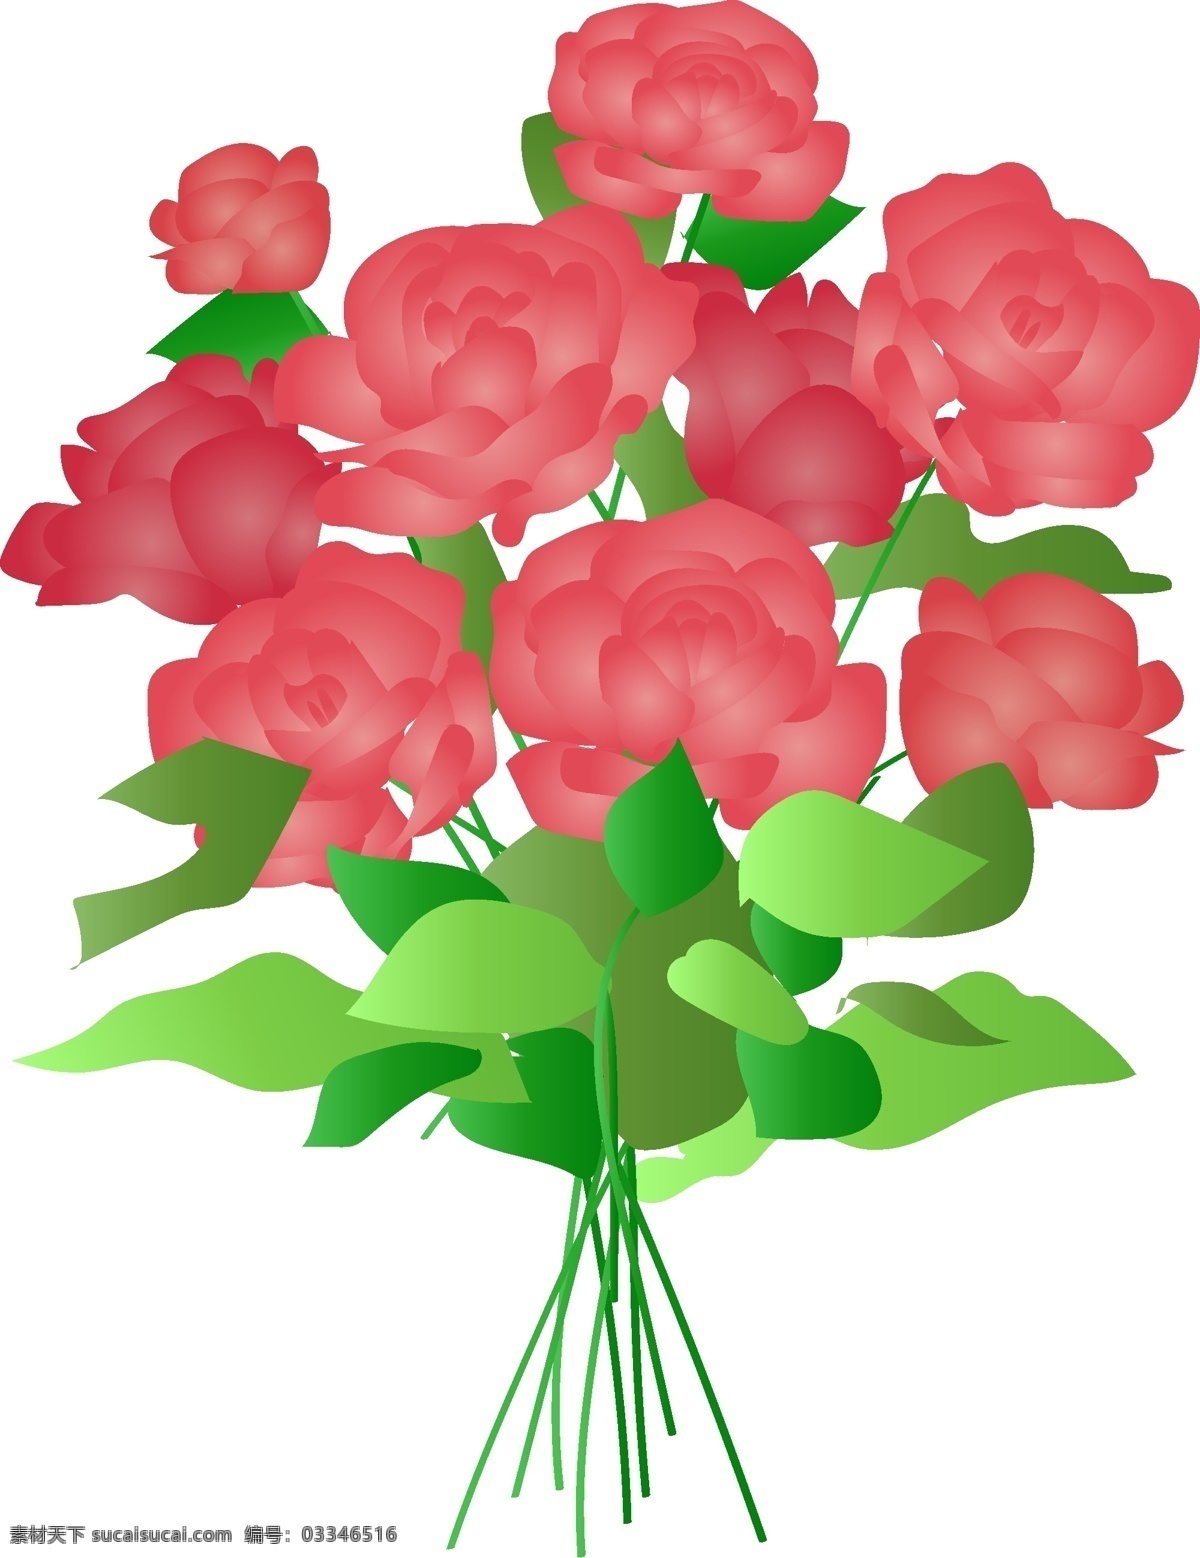 商用 手绘 节日 花束 植物 玫瑰花 蝴蝶结 插画 花朵 花艺